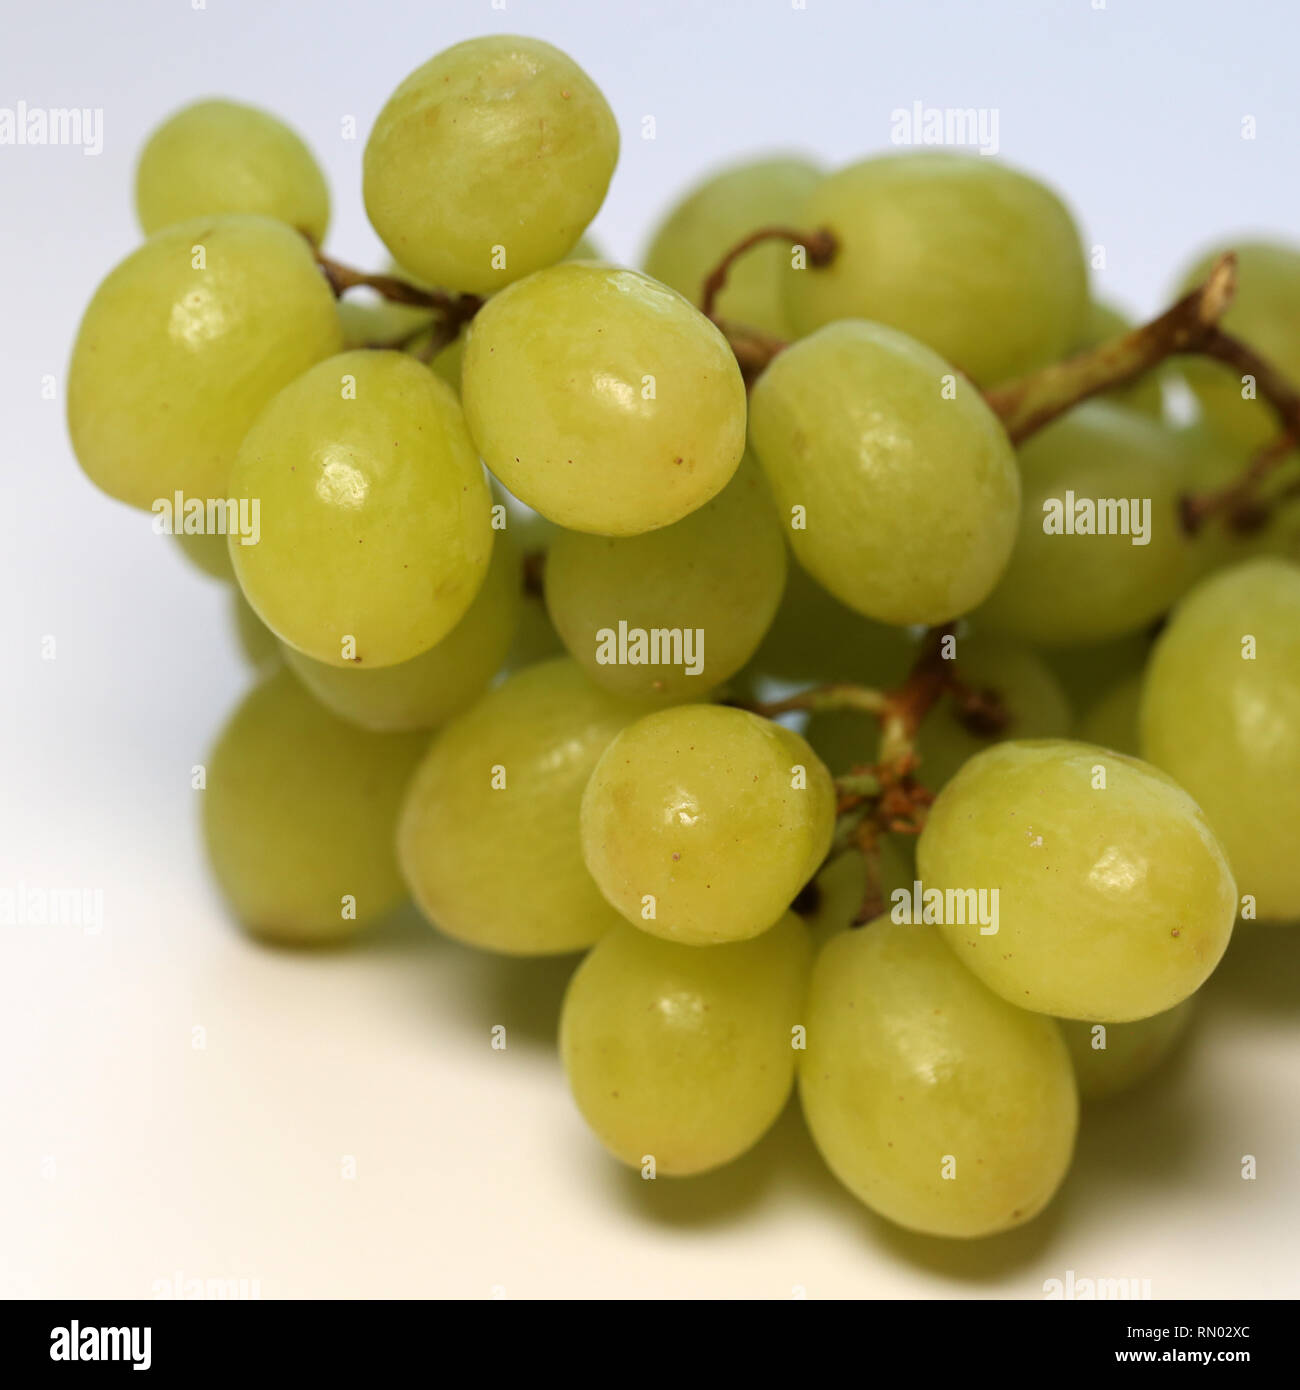 Reif und saftig grüne Trauben fotografiert auf einem Tisch. Farbe Bild von gesunden und leckeren Trauben. Nahaufnahme mit einem Makro Objektiv aufgenommen. Stockfoto